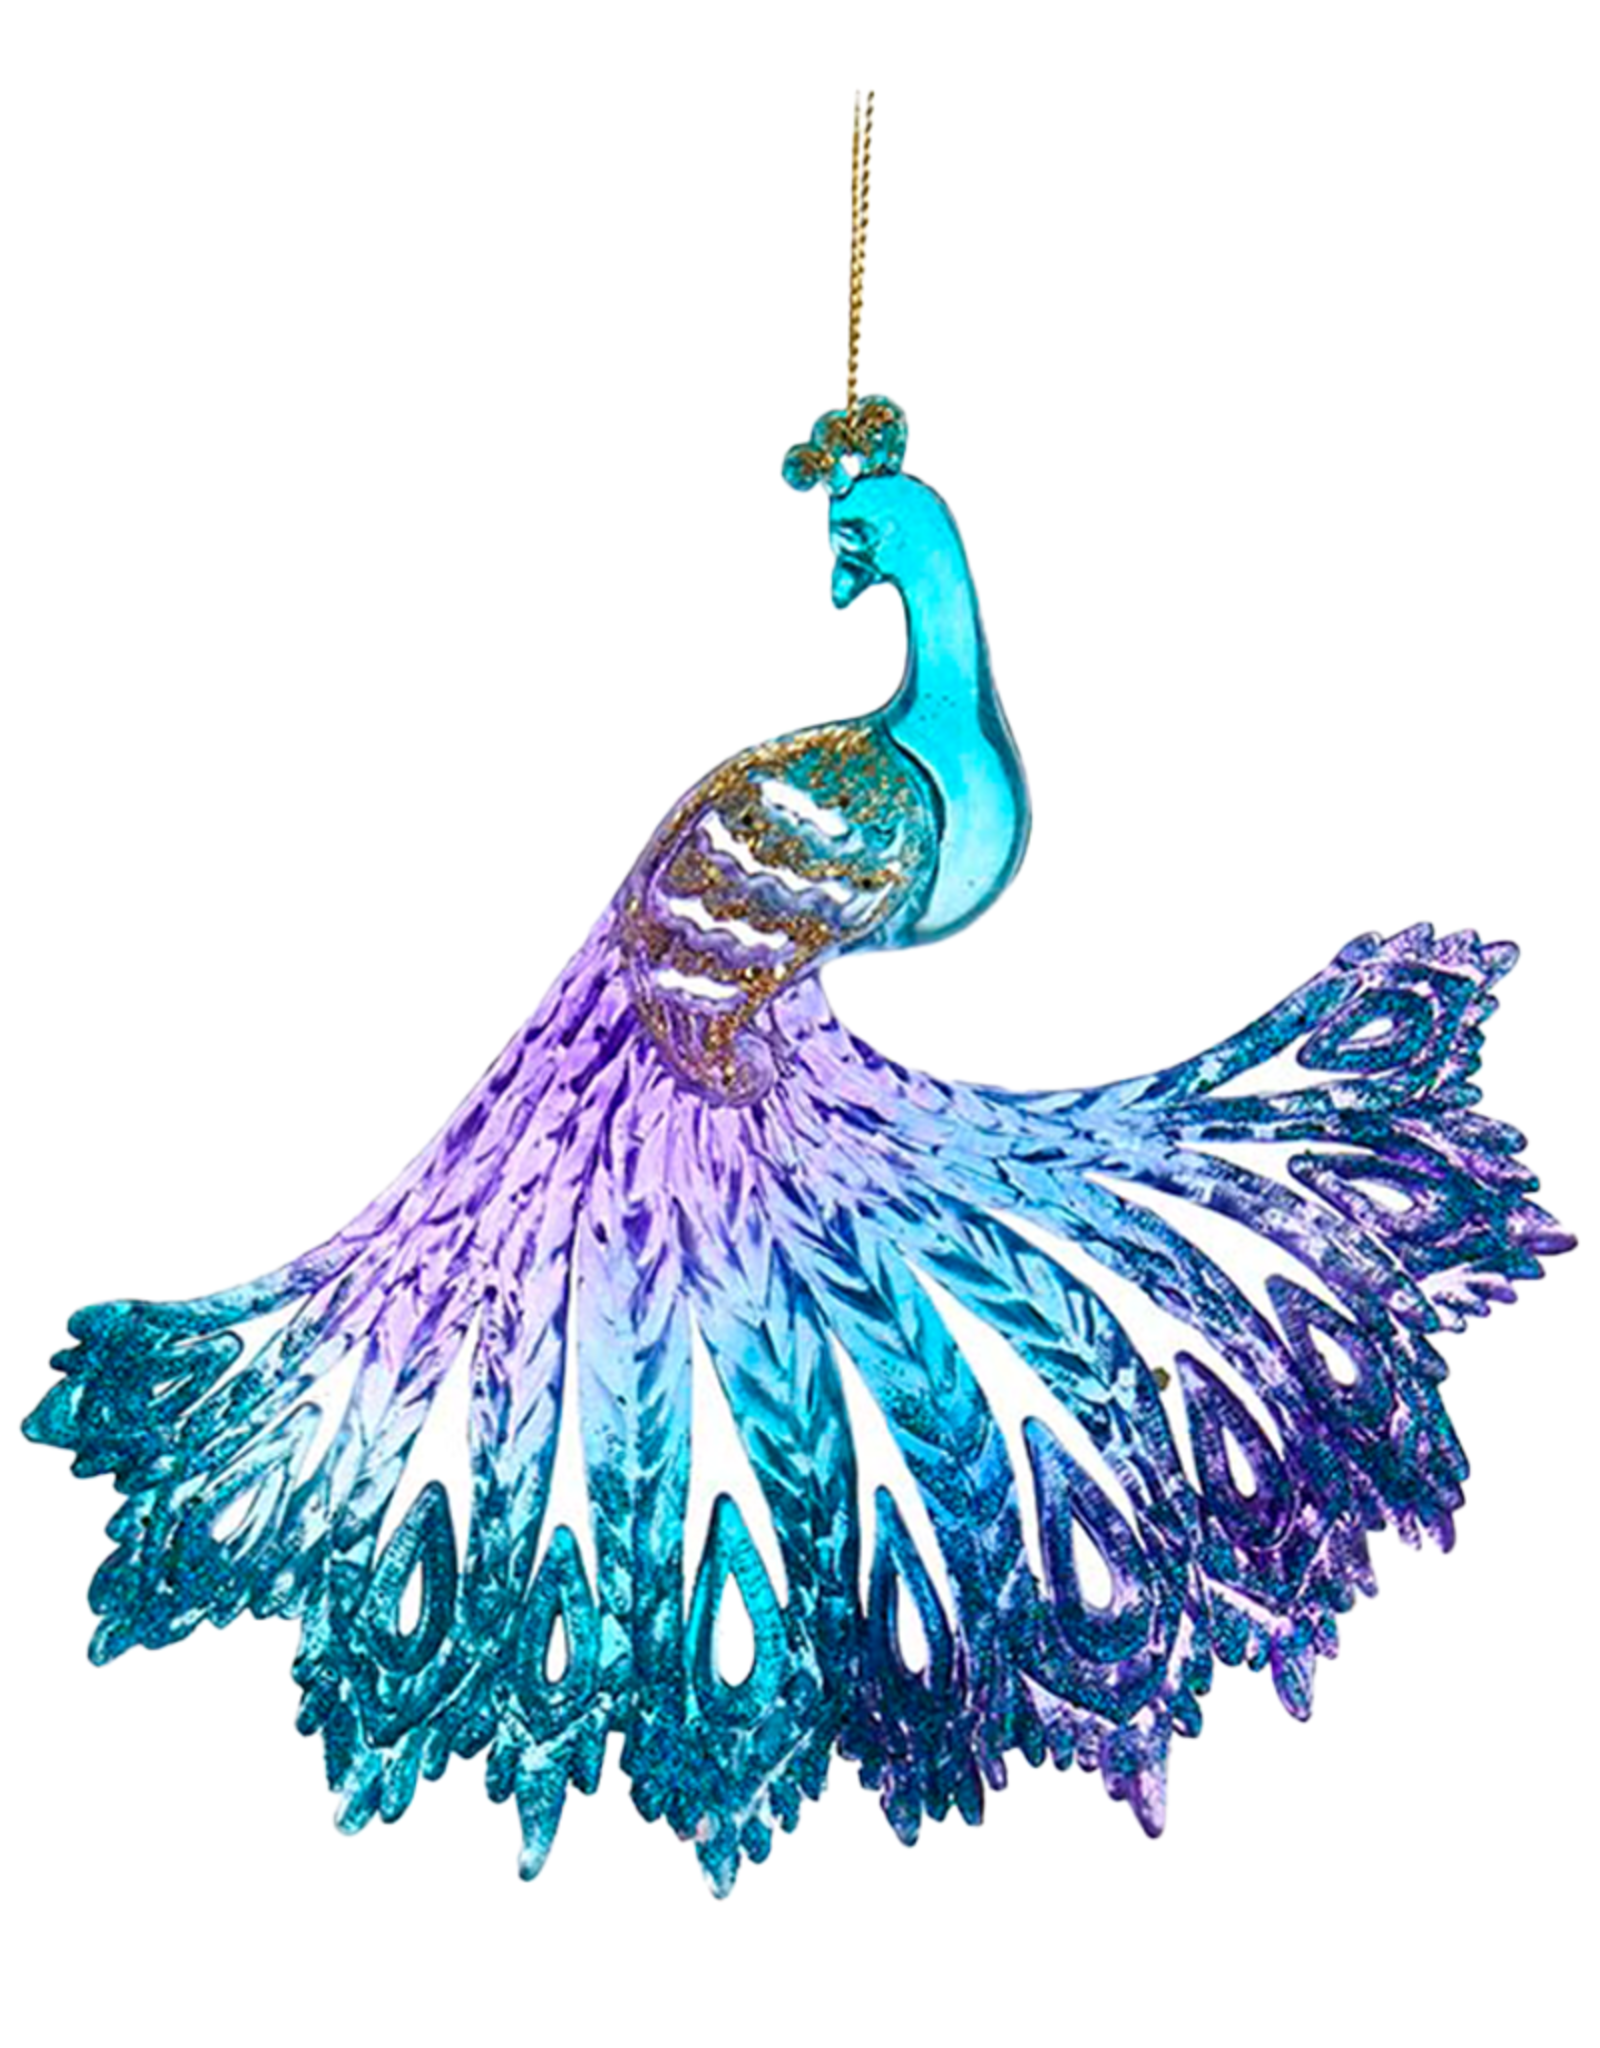 Kurt Adler Glitter Peacock Ornament B